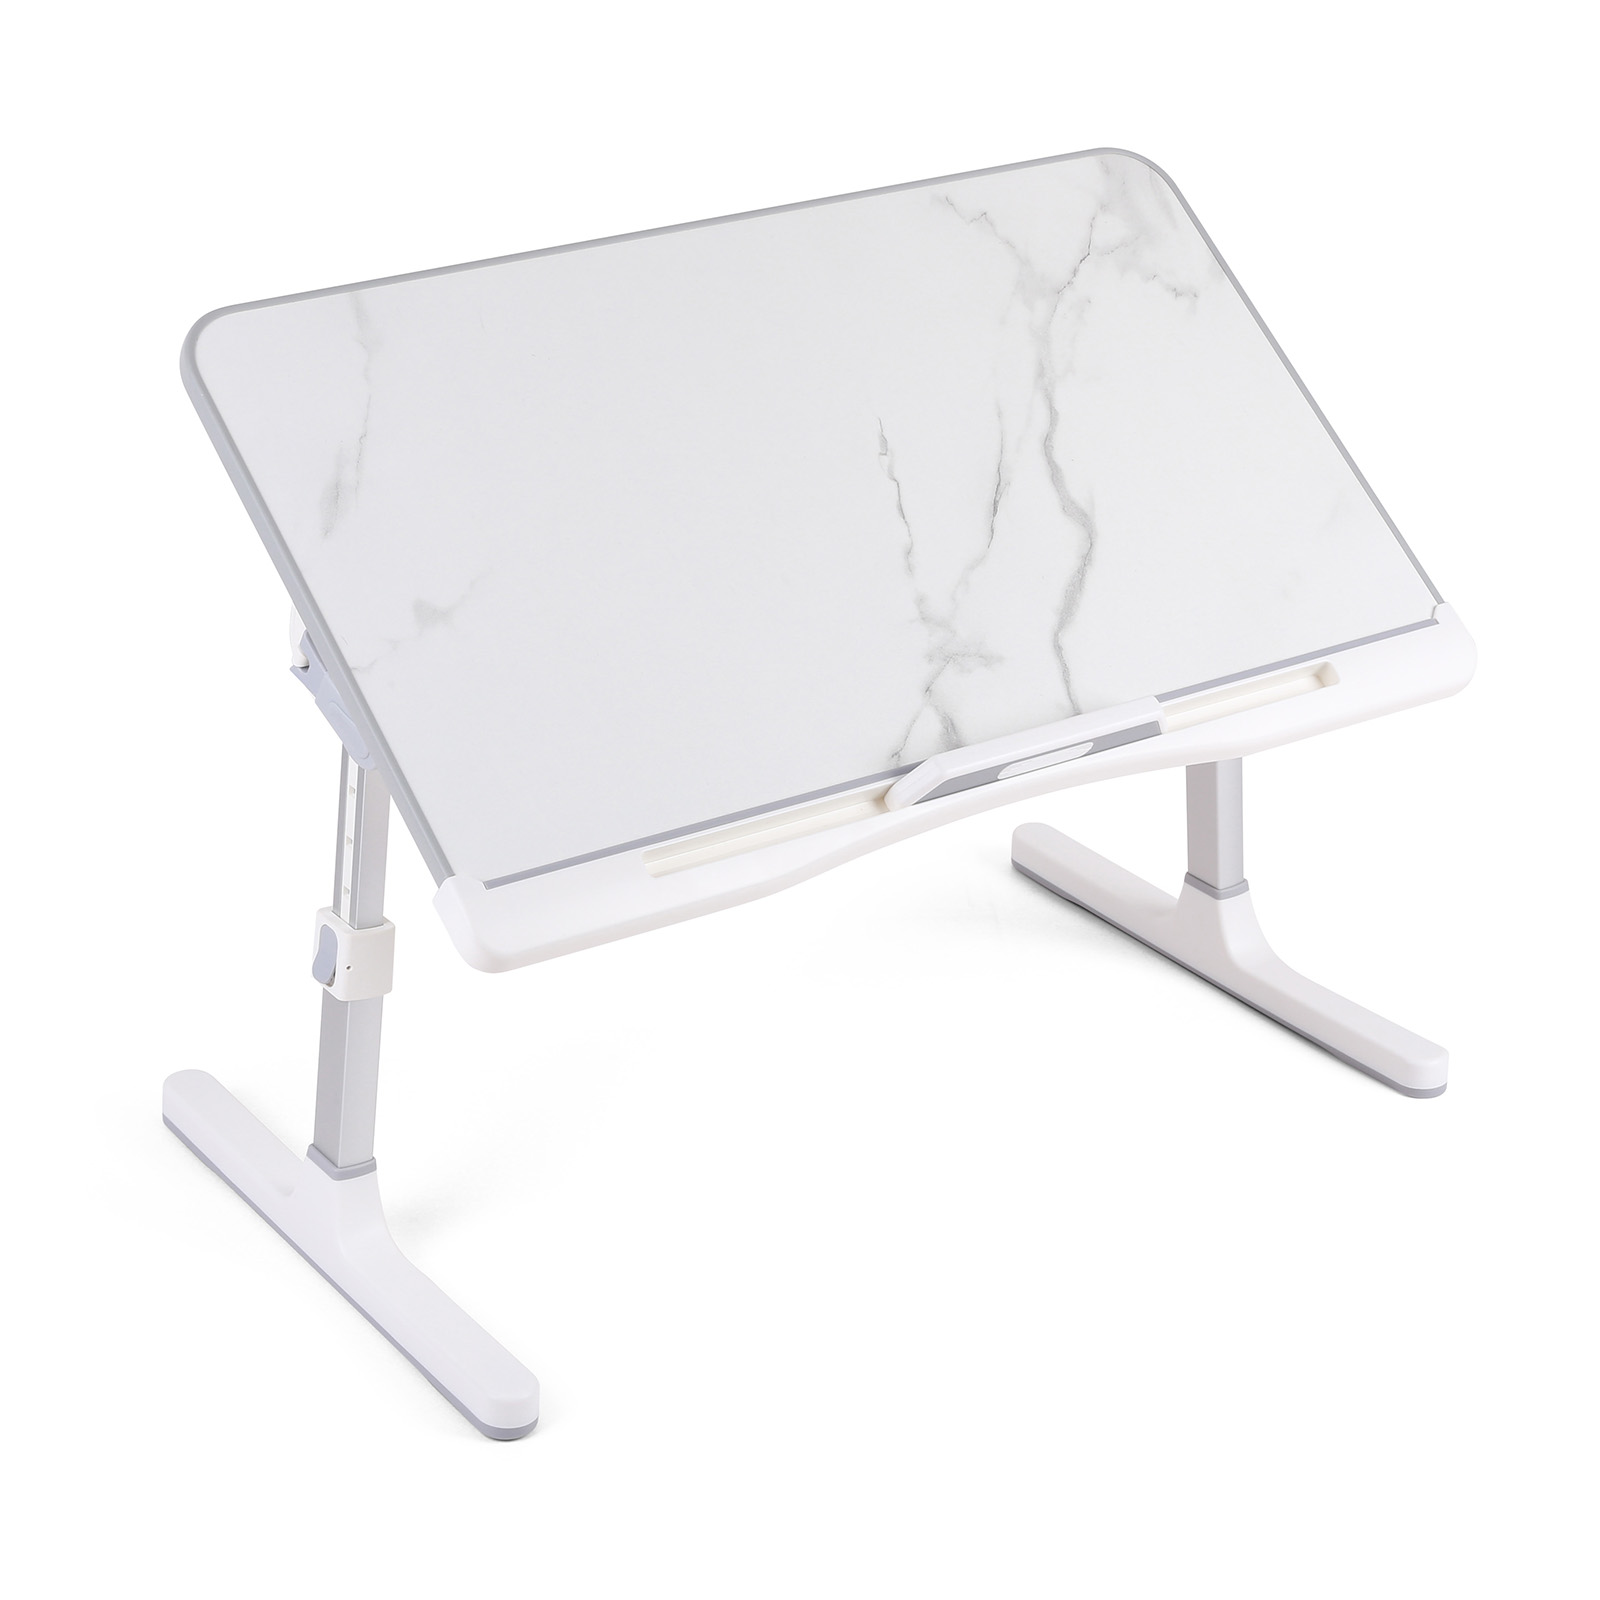 Foldable & Adjustable Laptop Desk